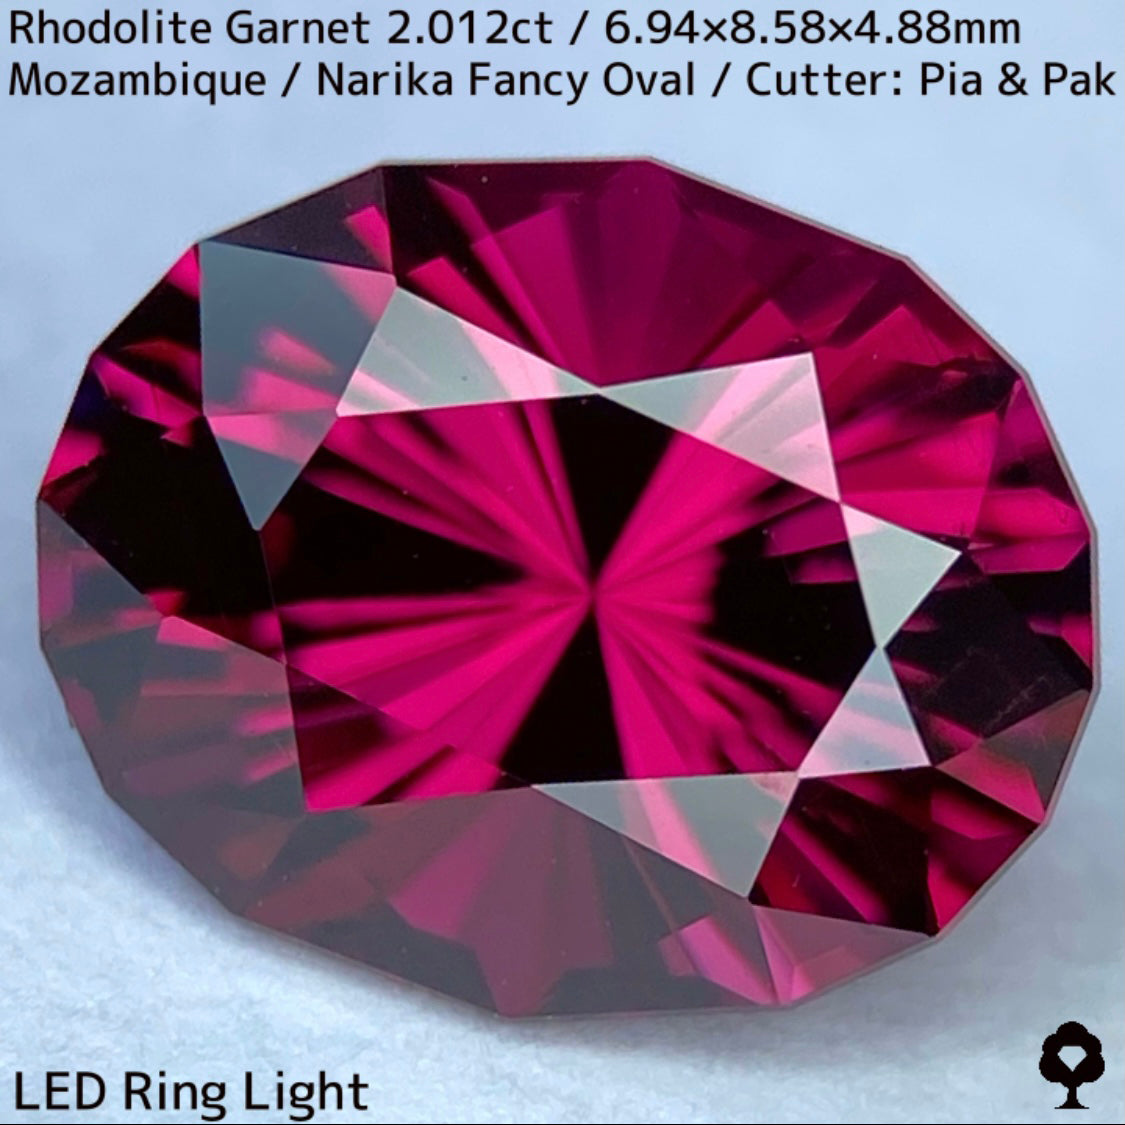 ロードライトガーネット2.012ct★ディープカラーからファイアー彩る美色パープリッシュピンクの鋭い煌めき